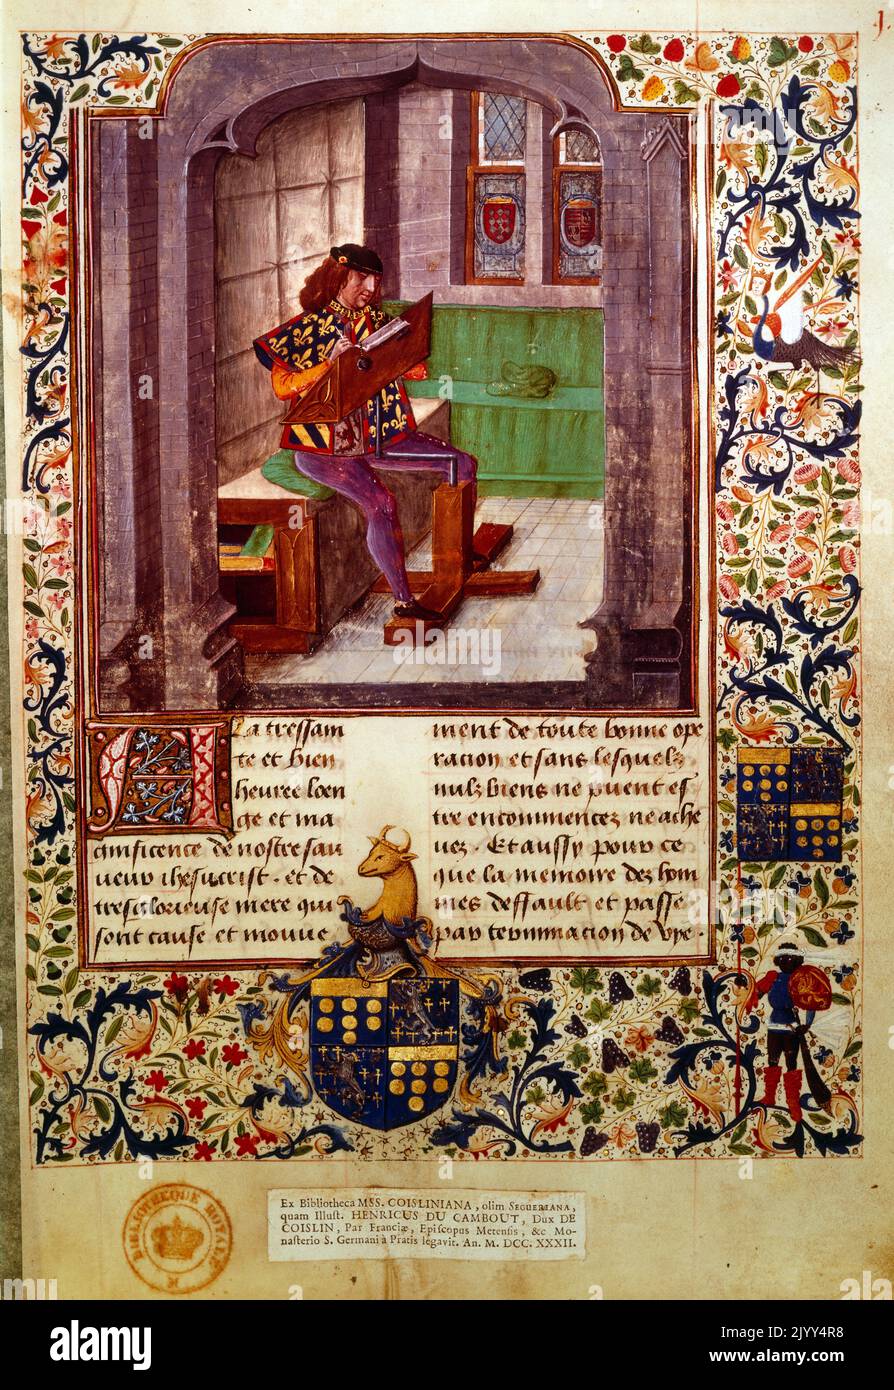 Französisch 15. Jahrhundert edel in der Ausbildung. Illustration aus einem mittelalterlichen Manuskript, das eine edle Lektüre zeigt, während er höfische Regeln studiert Stockfoto